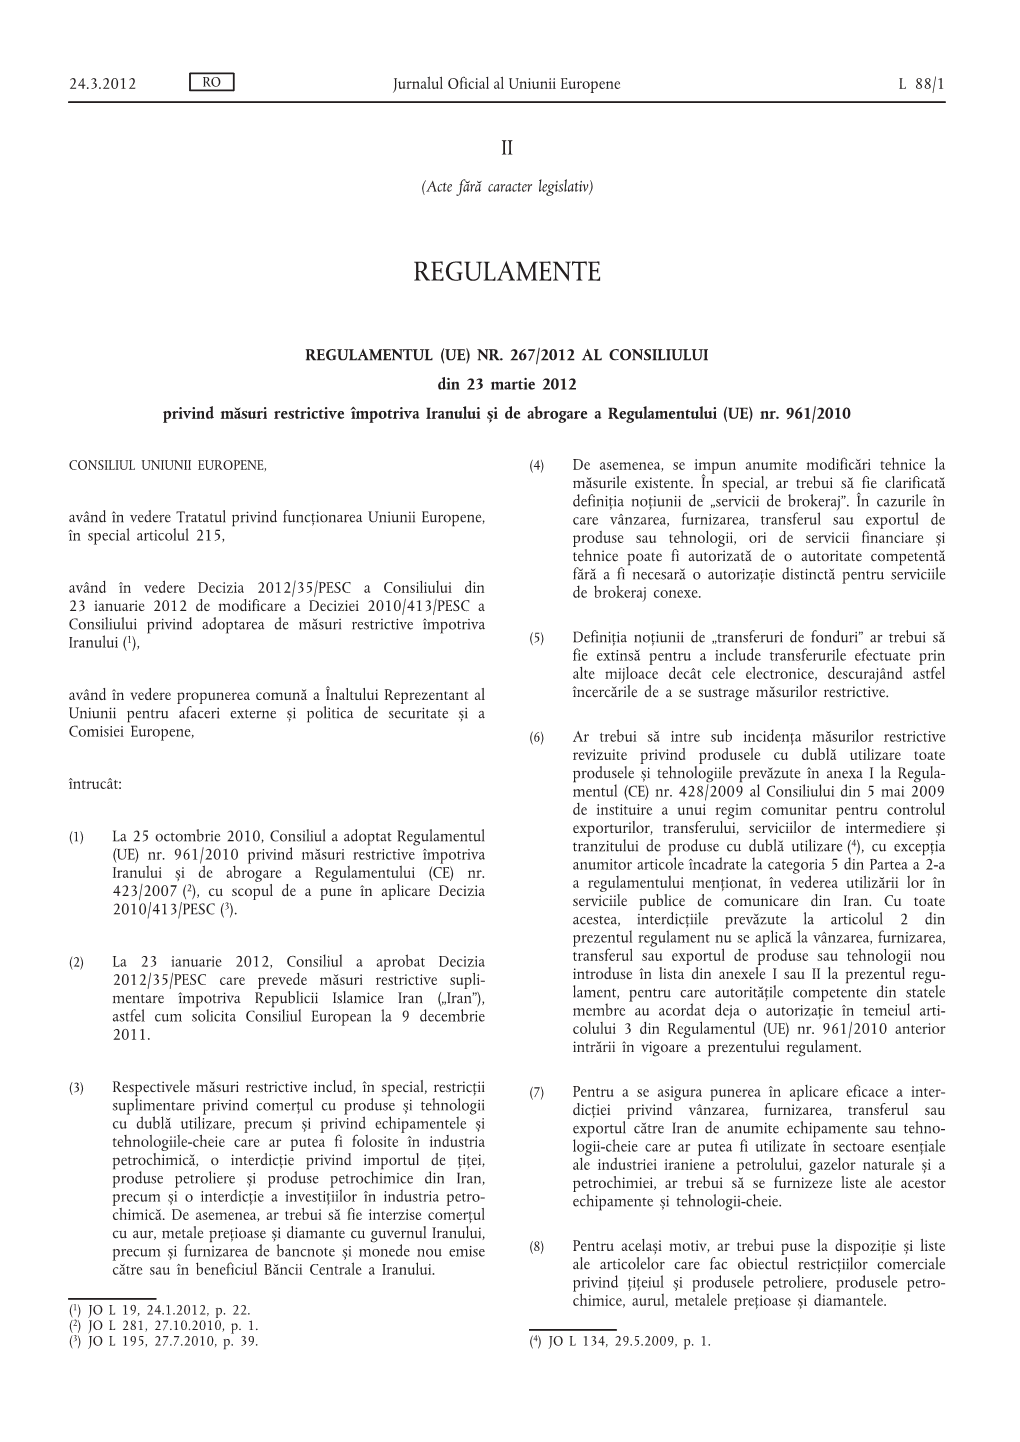 REGULAMENTUL (UE) NR. 267/2012 AL CONSILIULUI Din 23 Martie 2012 Privind Măsuri Restrictive Împotriva Iranului Și De Abrogare a Regulamentului (UE) Nr